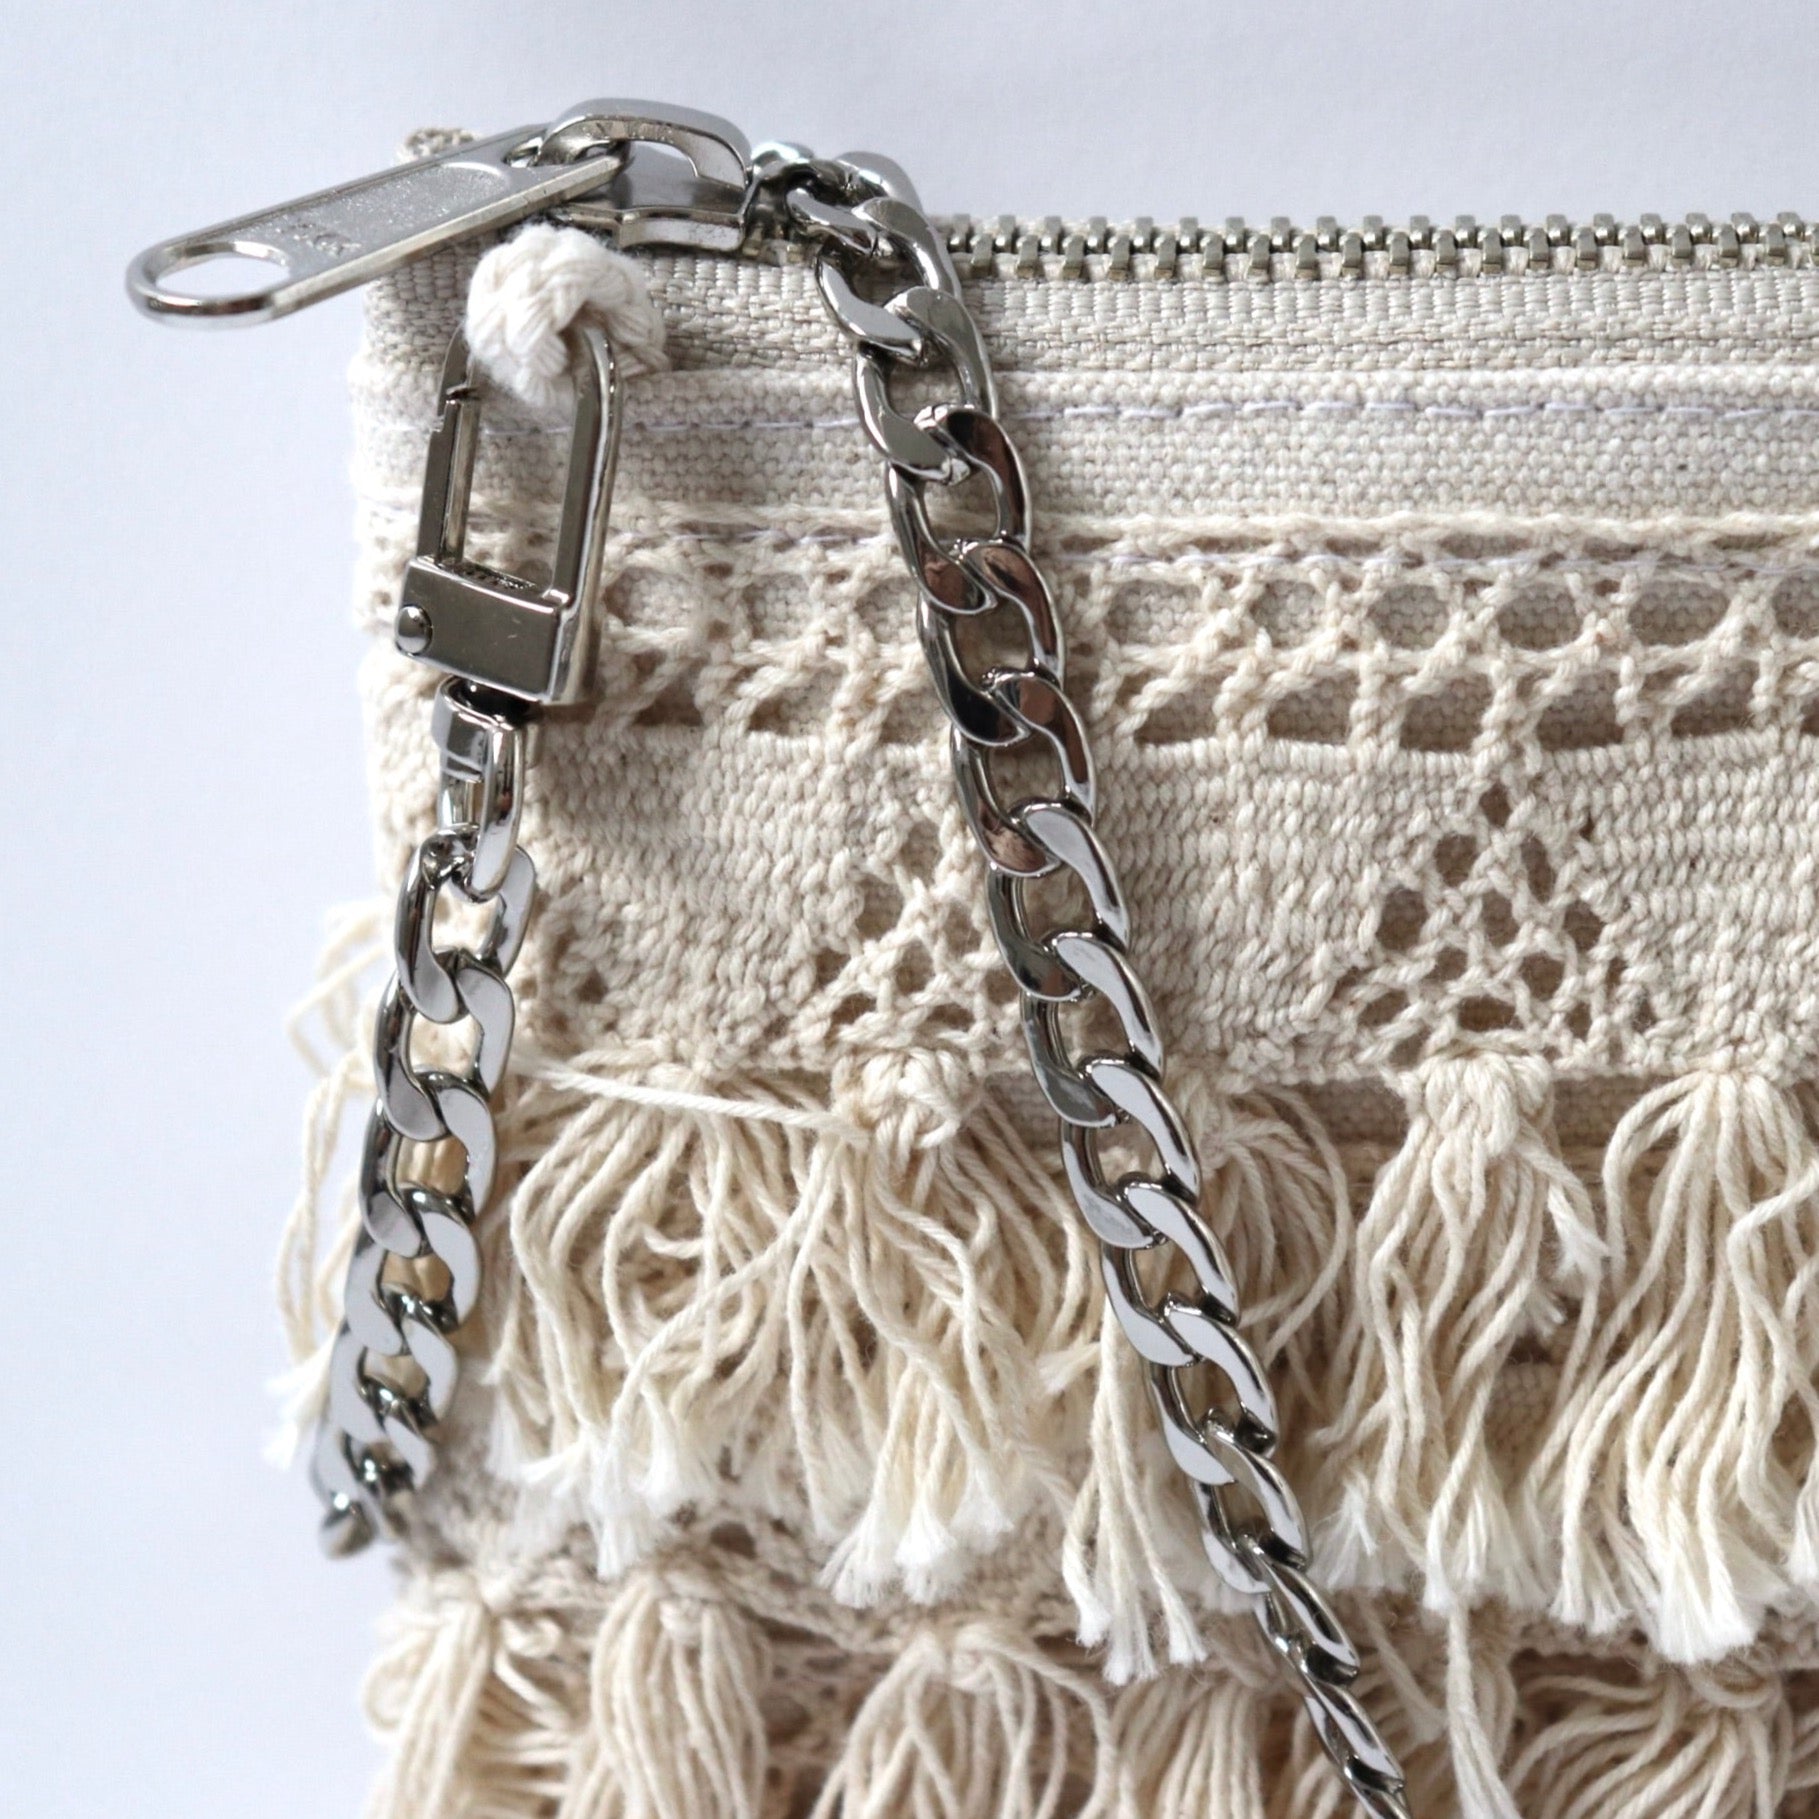 Boho fringe purse| boho crochet fringe purse